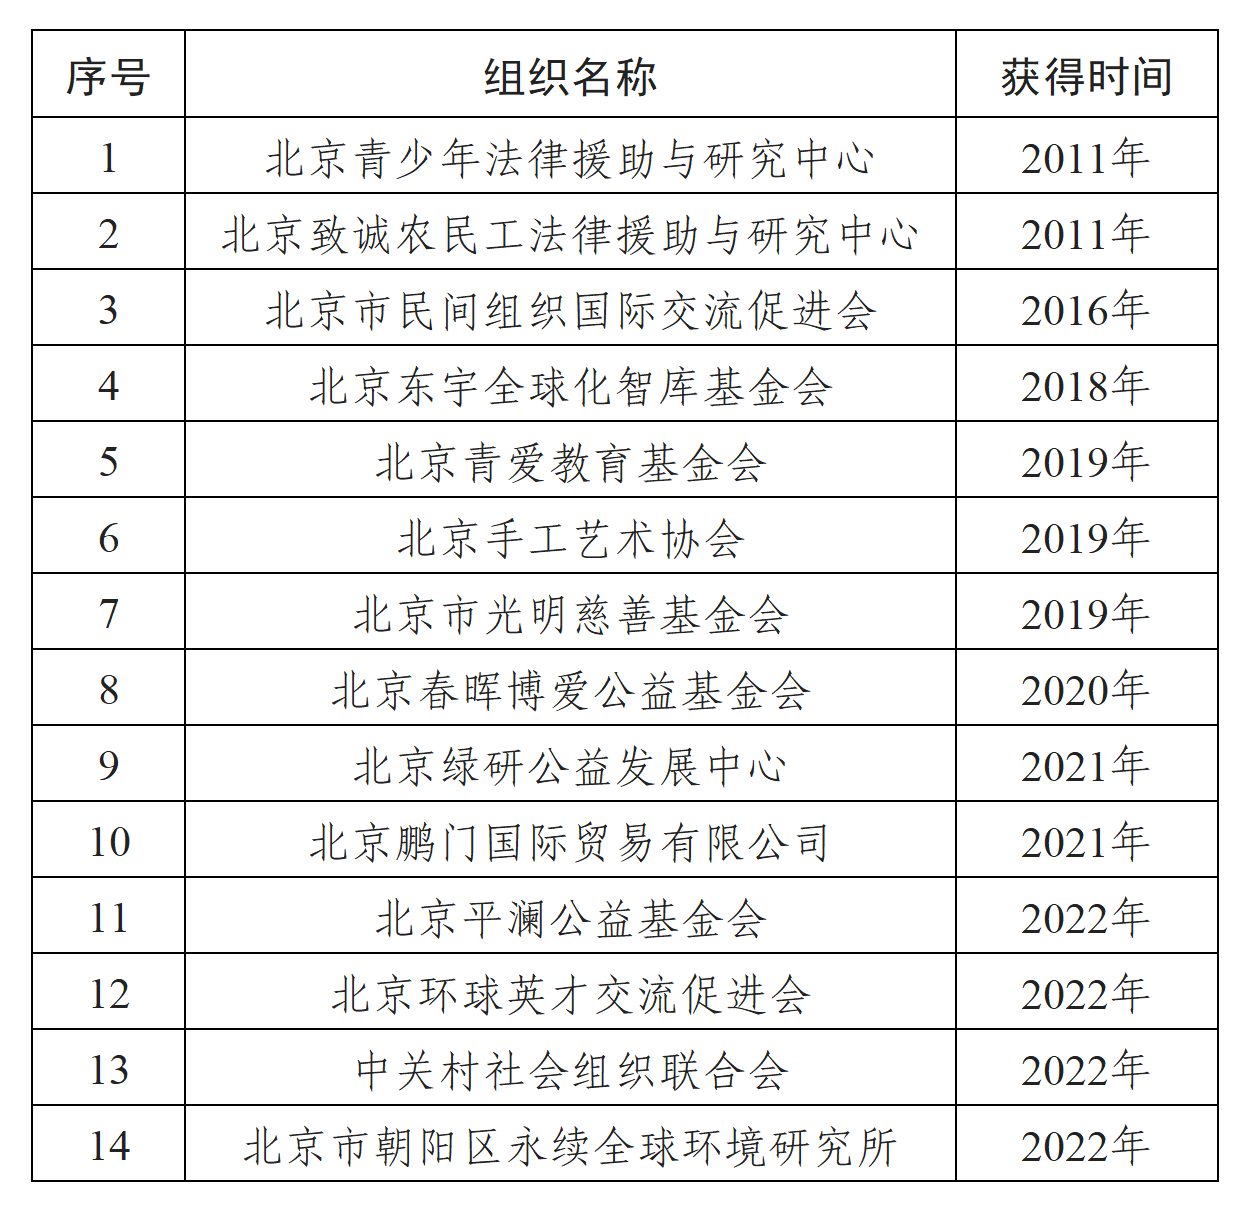 目前北京市获得咨商地位的组织机构名单.png